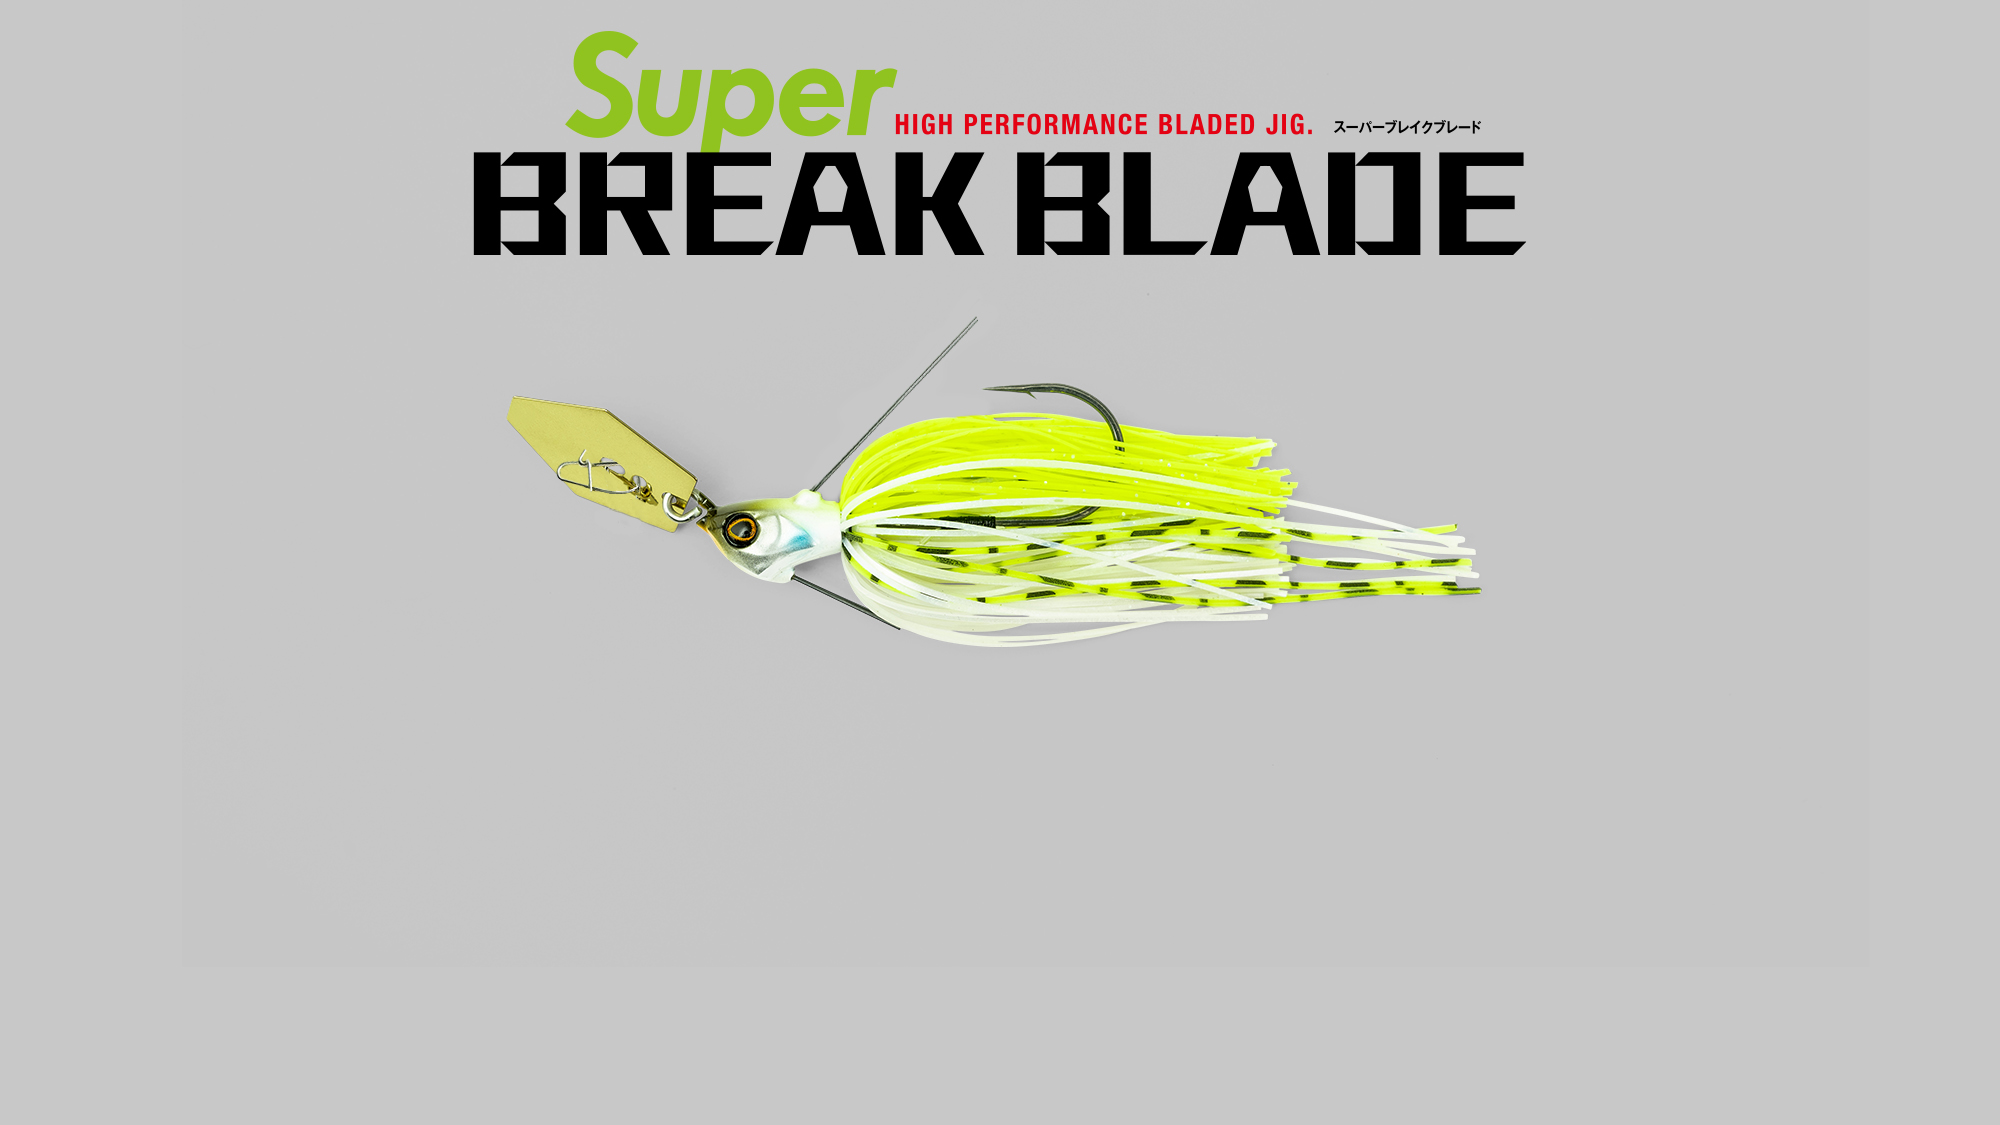 スーパーブレイクブレード Super BREAK BLADE/スーパーブレイクブレード